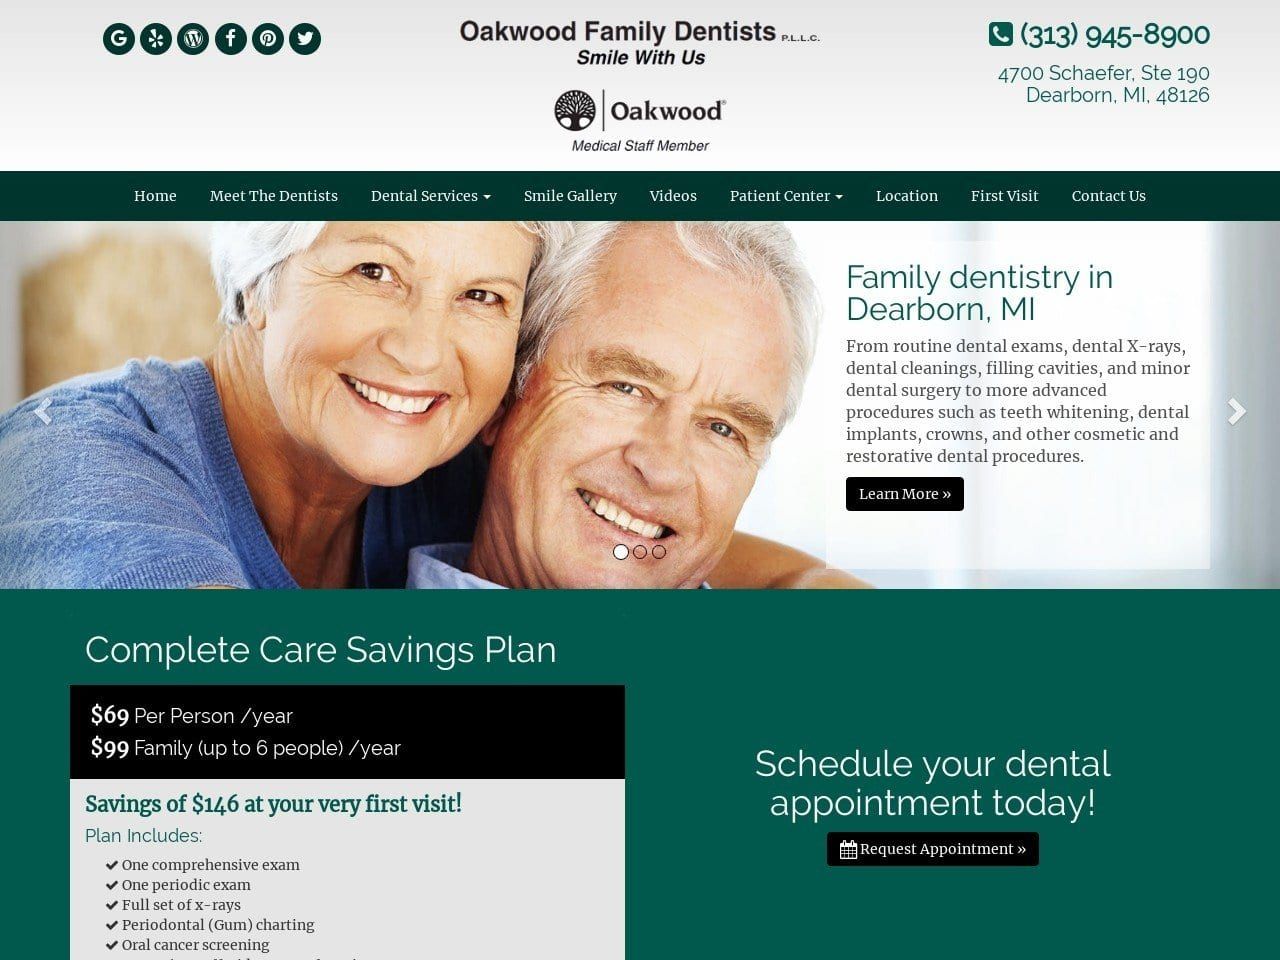 Oakwood Family Dentist Website Screenshot from oakwoodfamilydentists.com